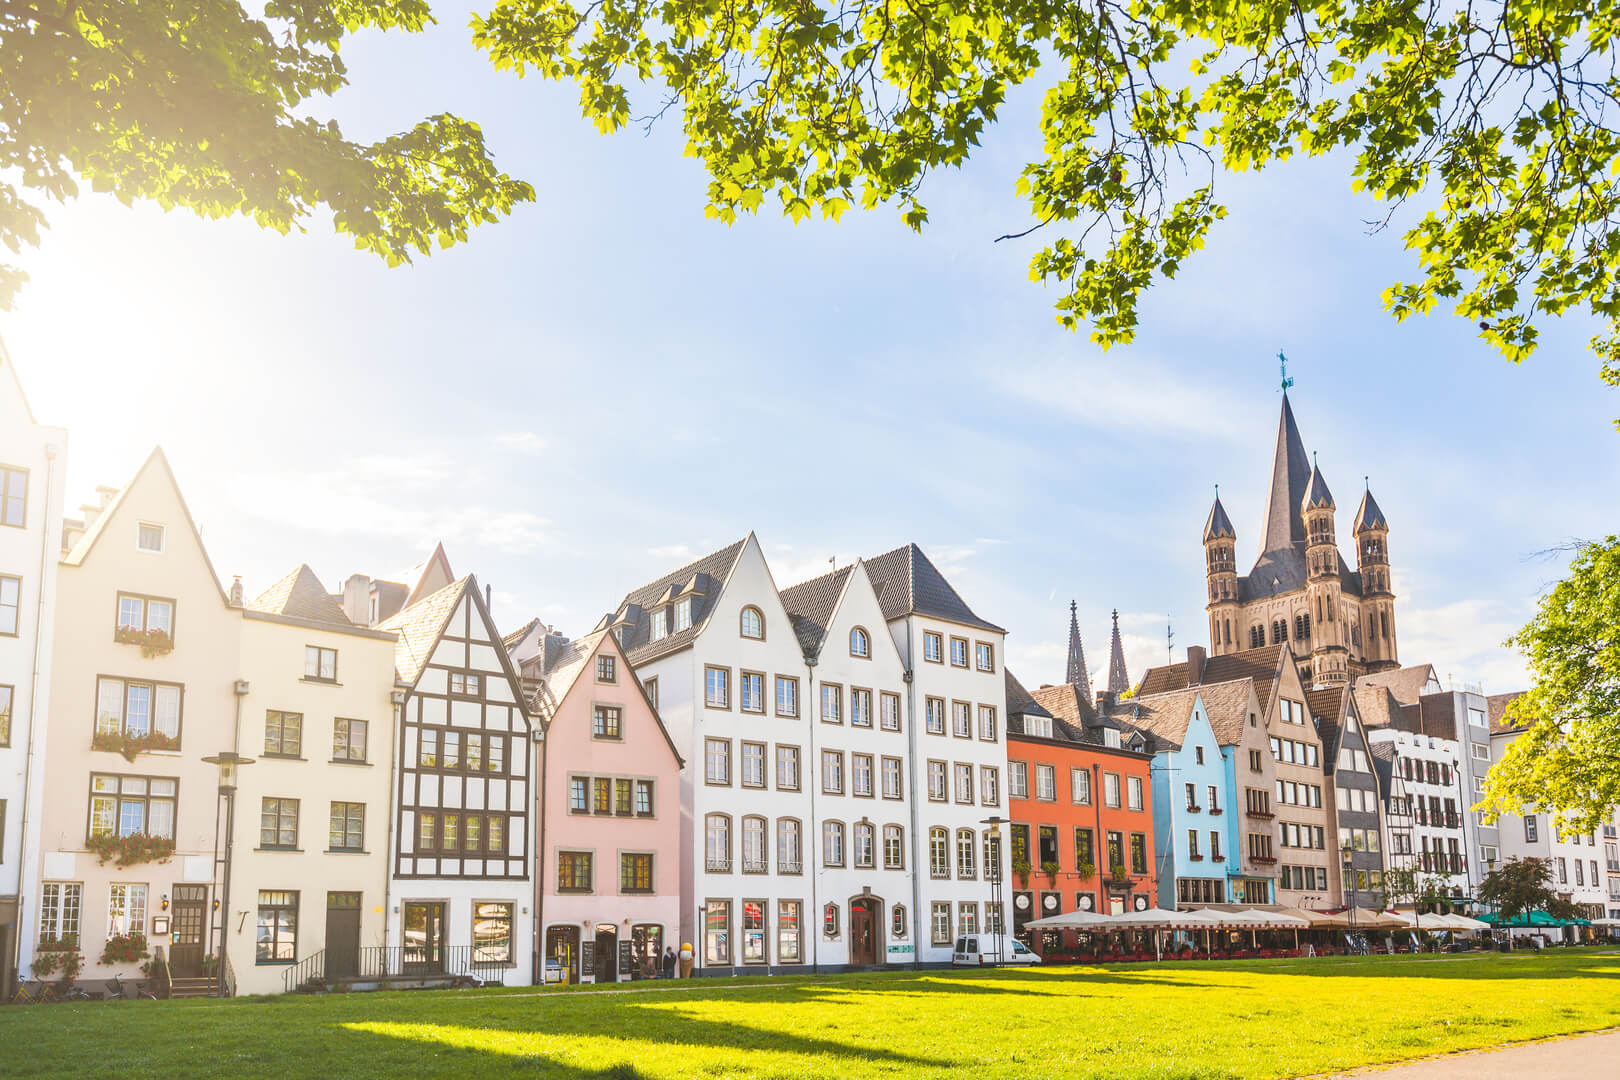 Maisons et parc à Cologne, en Allemagne. Beaucoup d'entre elles sont colorées, elles font face à un parc public avec de l'herbe verte et quelques arbres. On aperçoit un clocher en arrière-plan. Concepts de voyage et d'architecture.